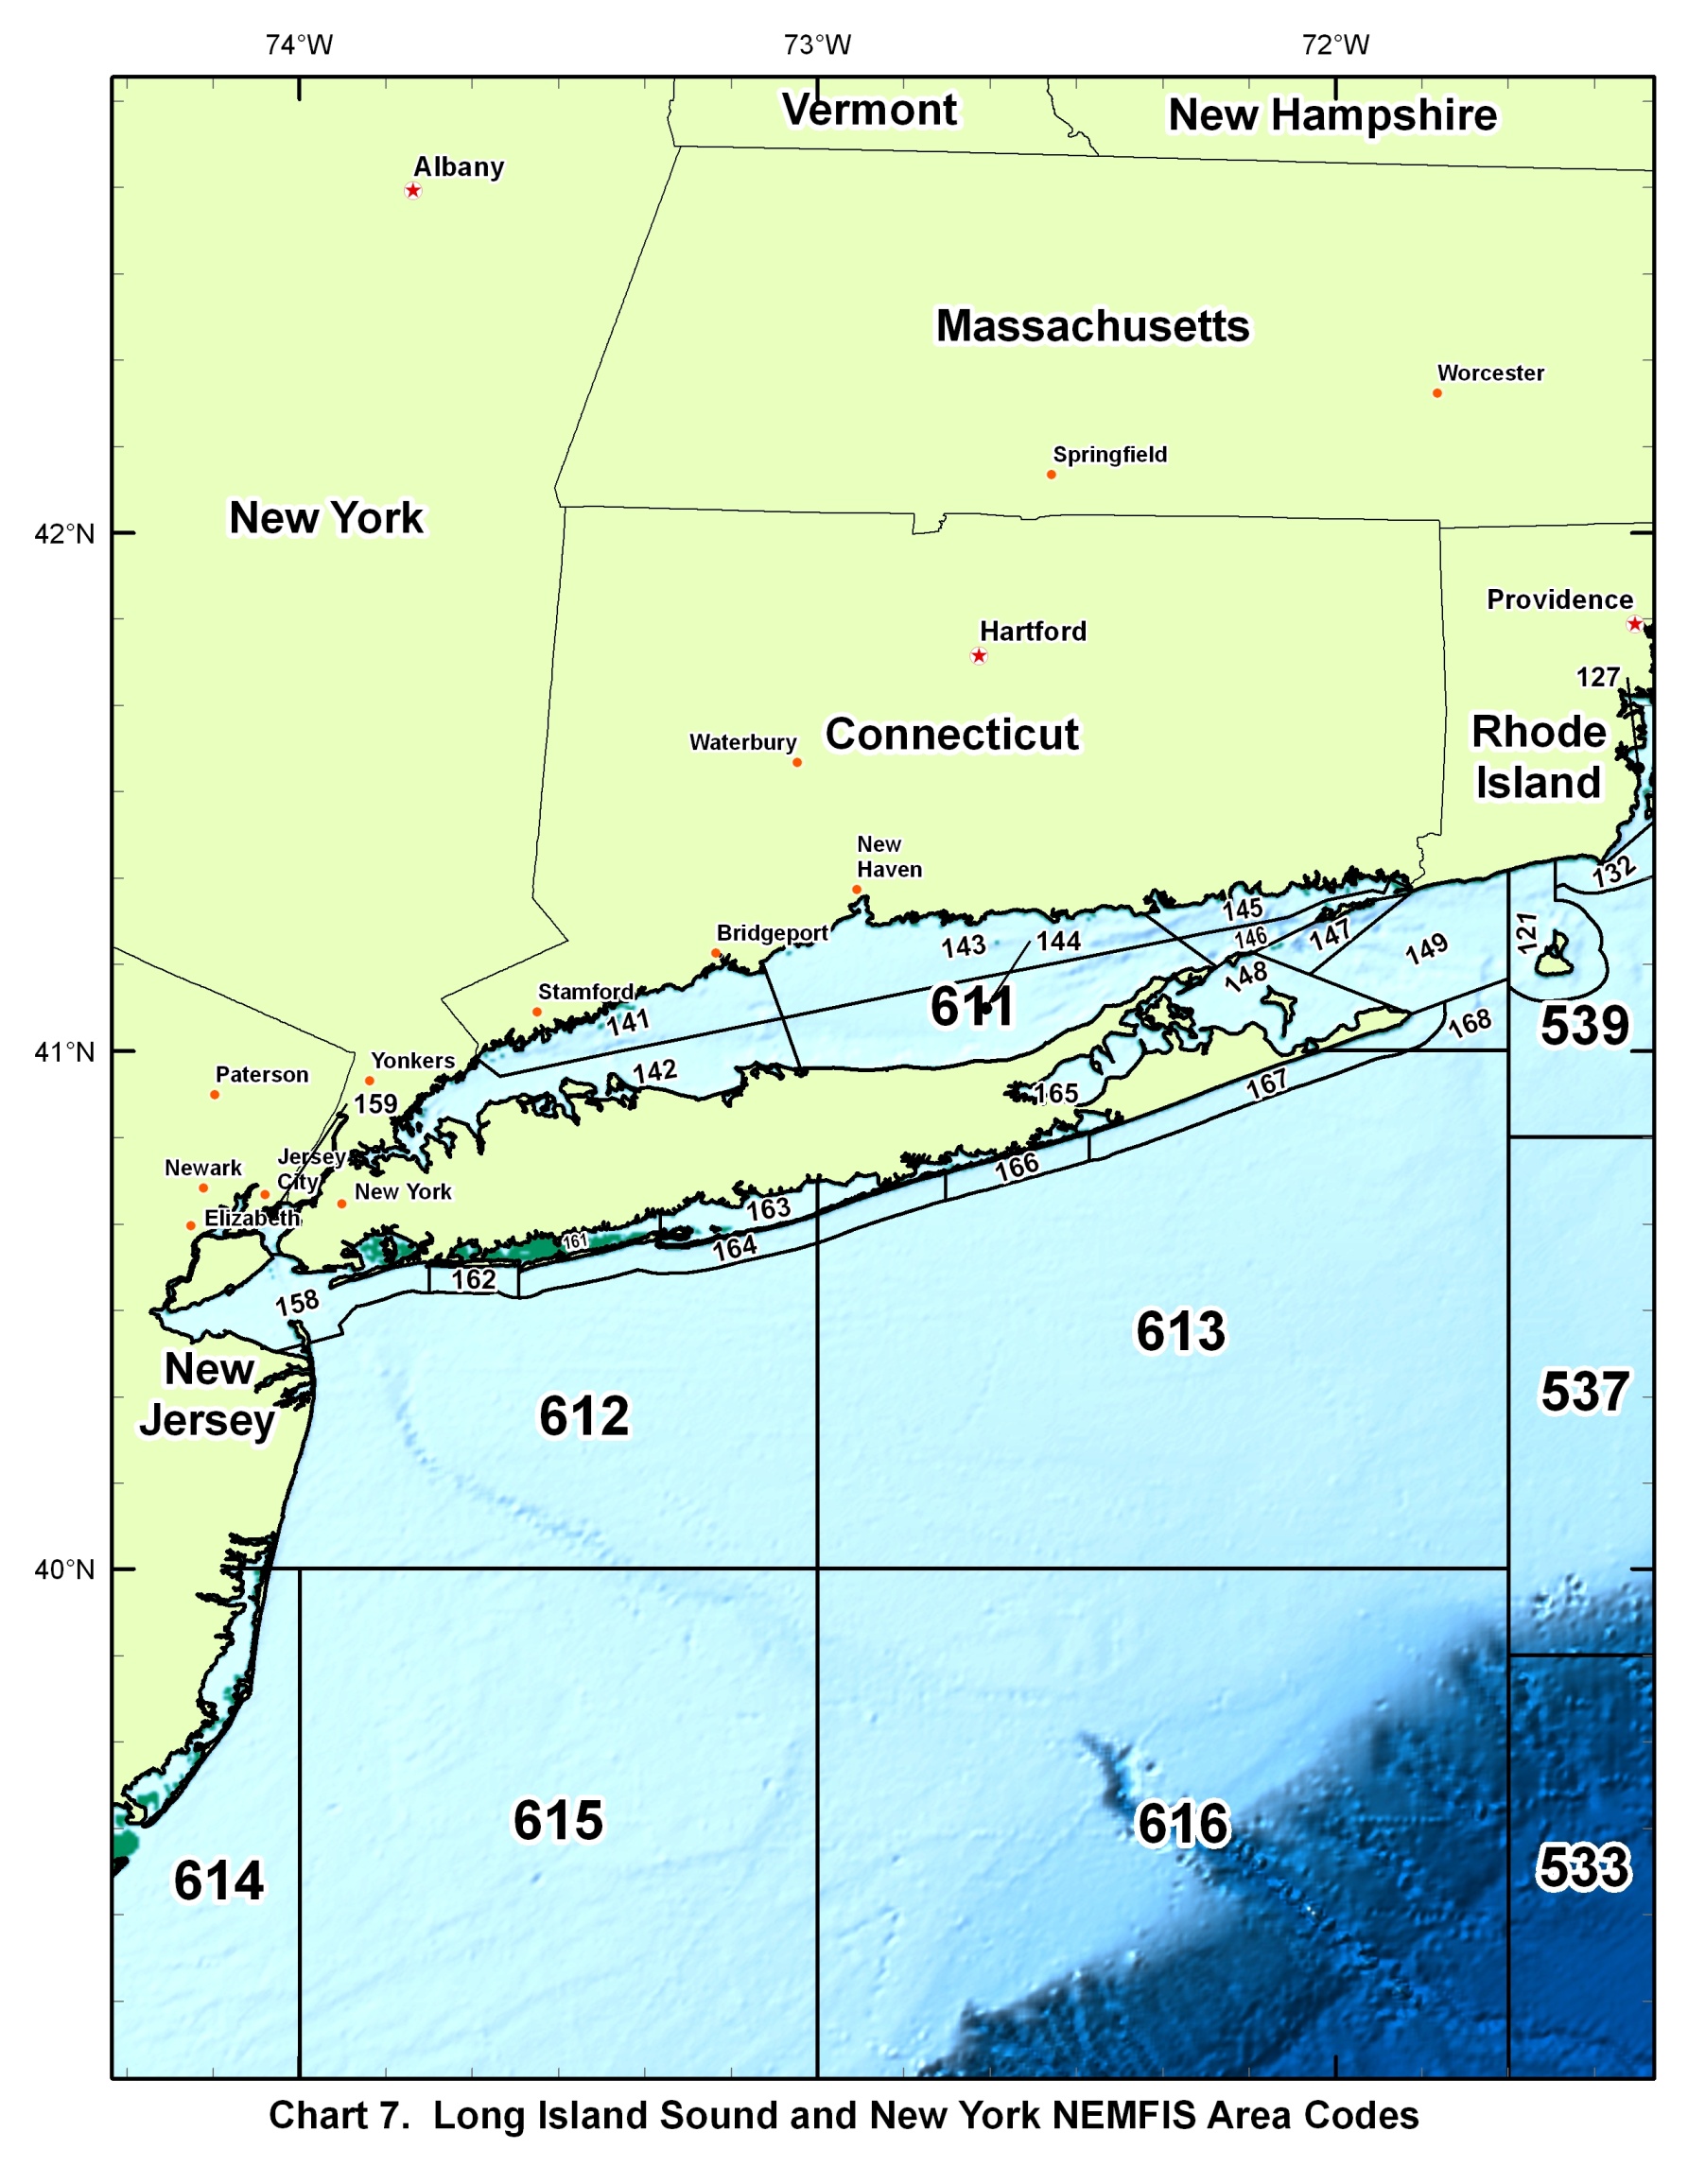 Chart 7 - Long Island Sound and NY NEMFIS Area Codes